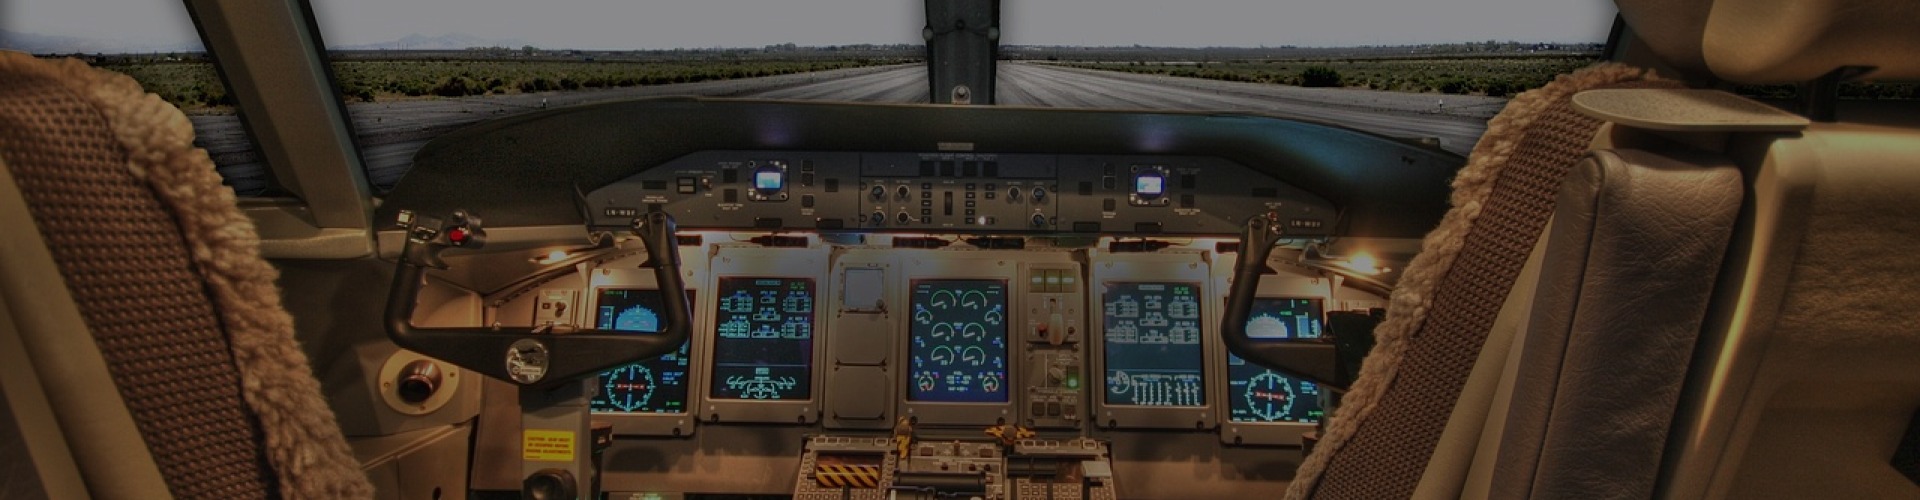 Simulateur de Vol en Nord-Pas-de-Calais